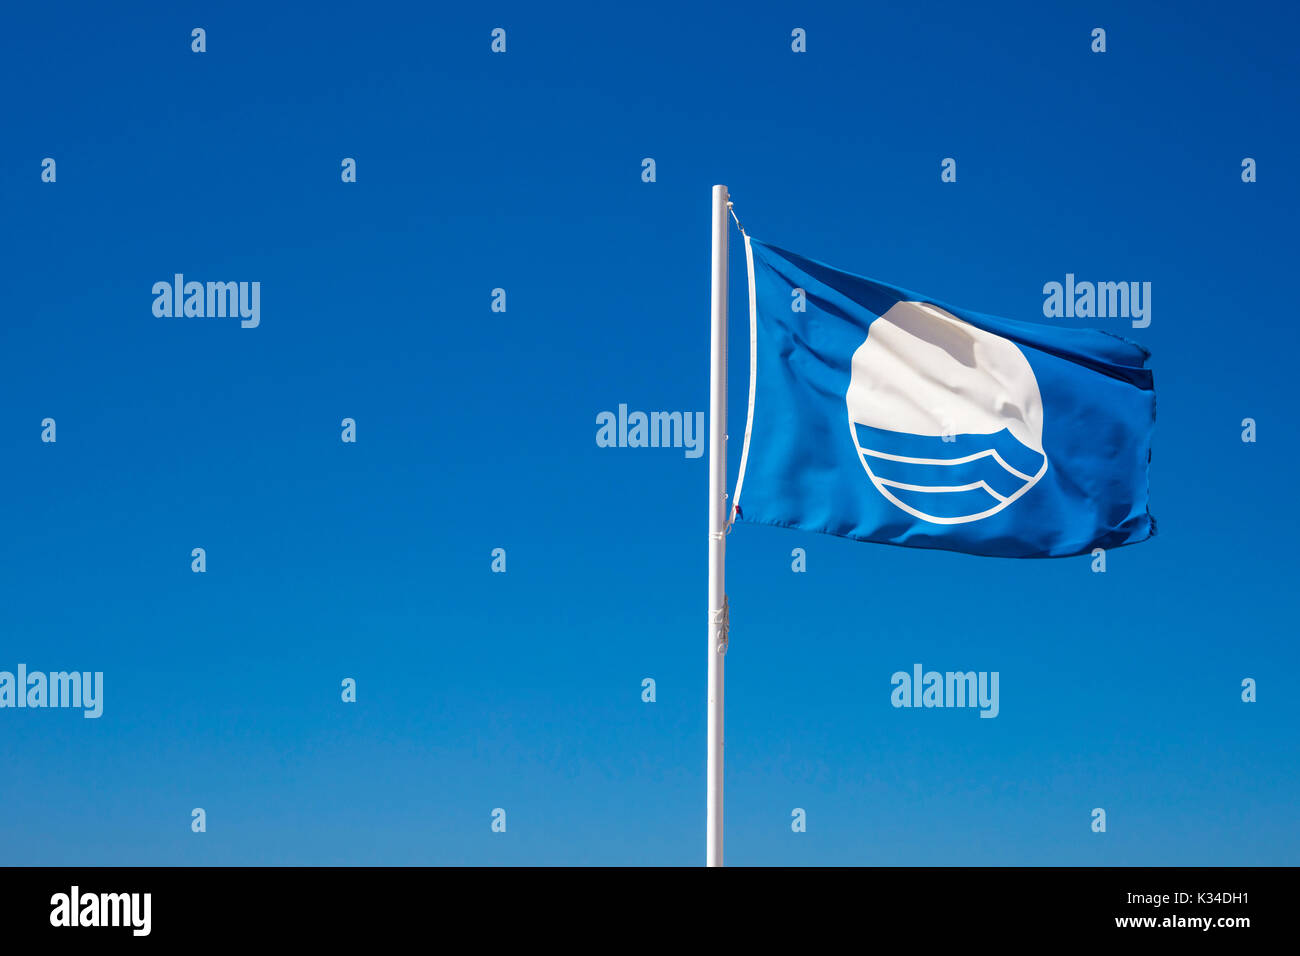 Dettaglio della bandiera blu in spiaggia, che significa che esso ha raggiunto gli standard specifici di qualità dell'acqua, sicurezza, servizi e gestione ambientale Foto Stock